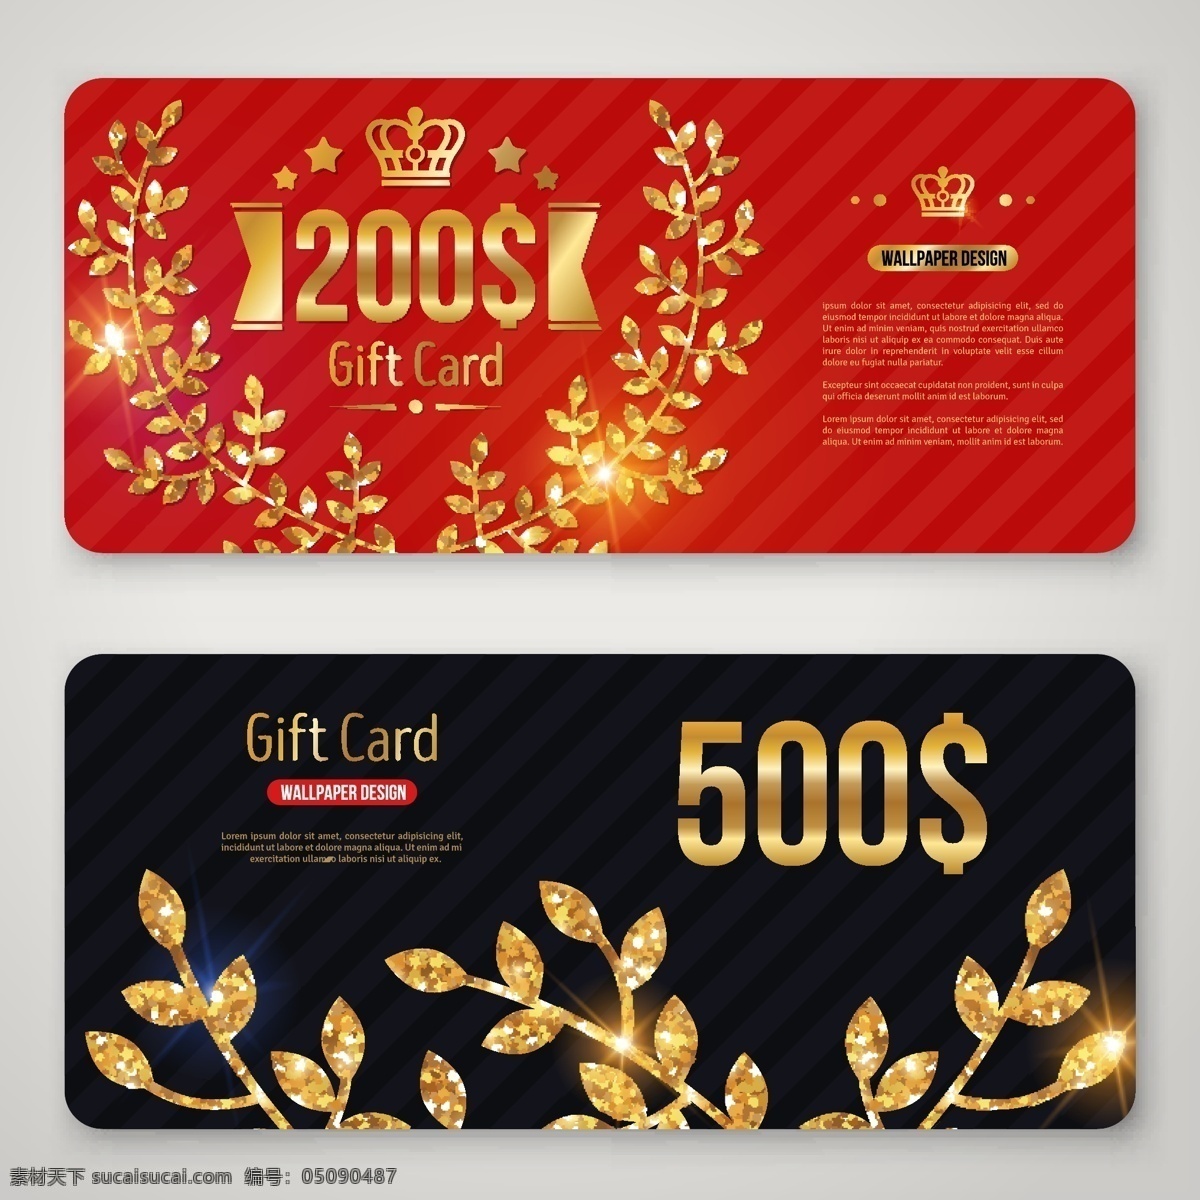 金色 橄榄枝 底纹 卡片 矢量 红色卡片 黑色卡片 会员卡 贵宾卡 礼物卡 创意卡片 矢量素材 优惠券代金券